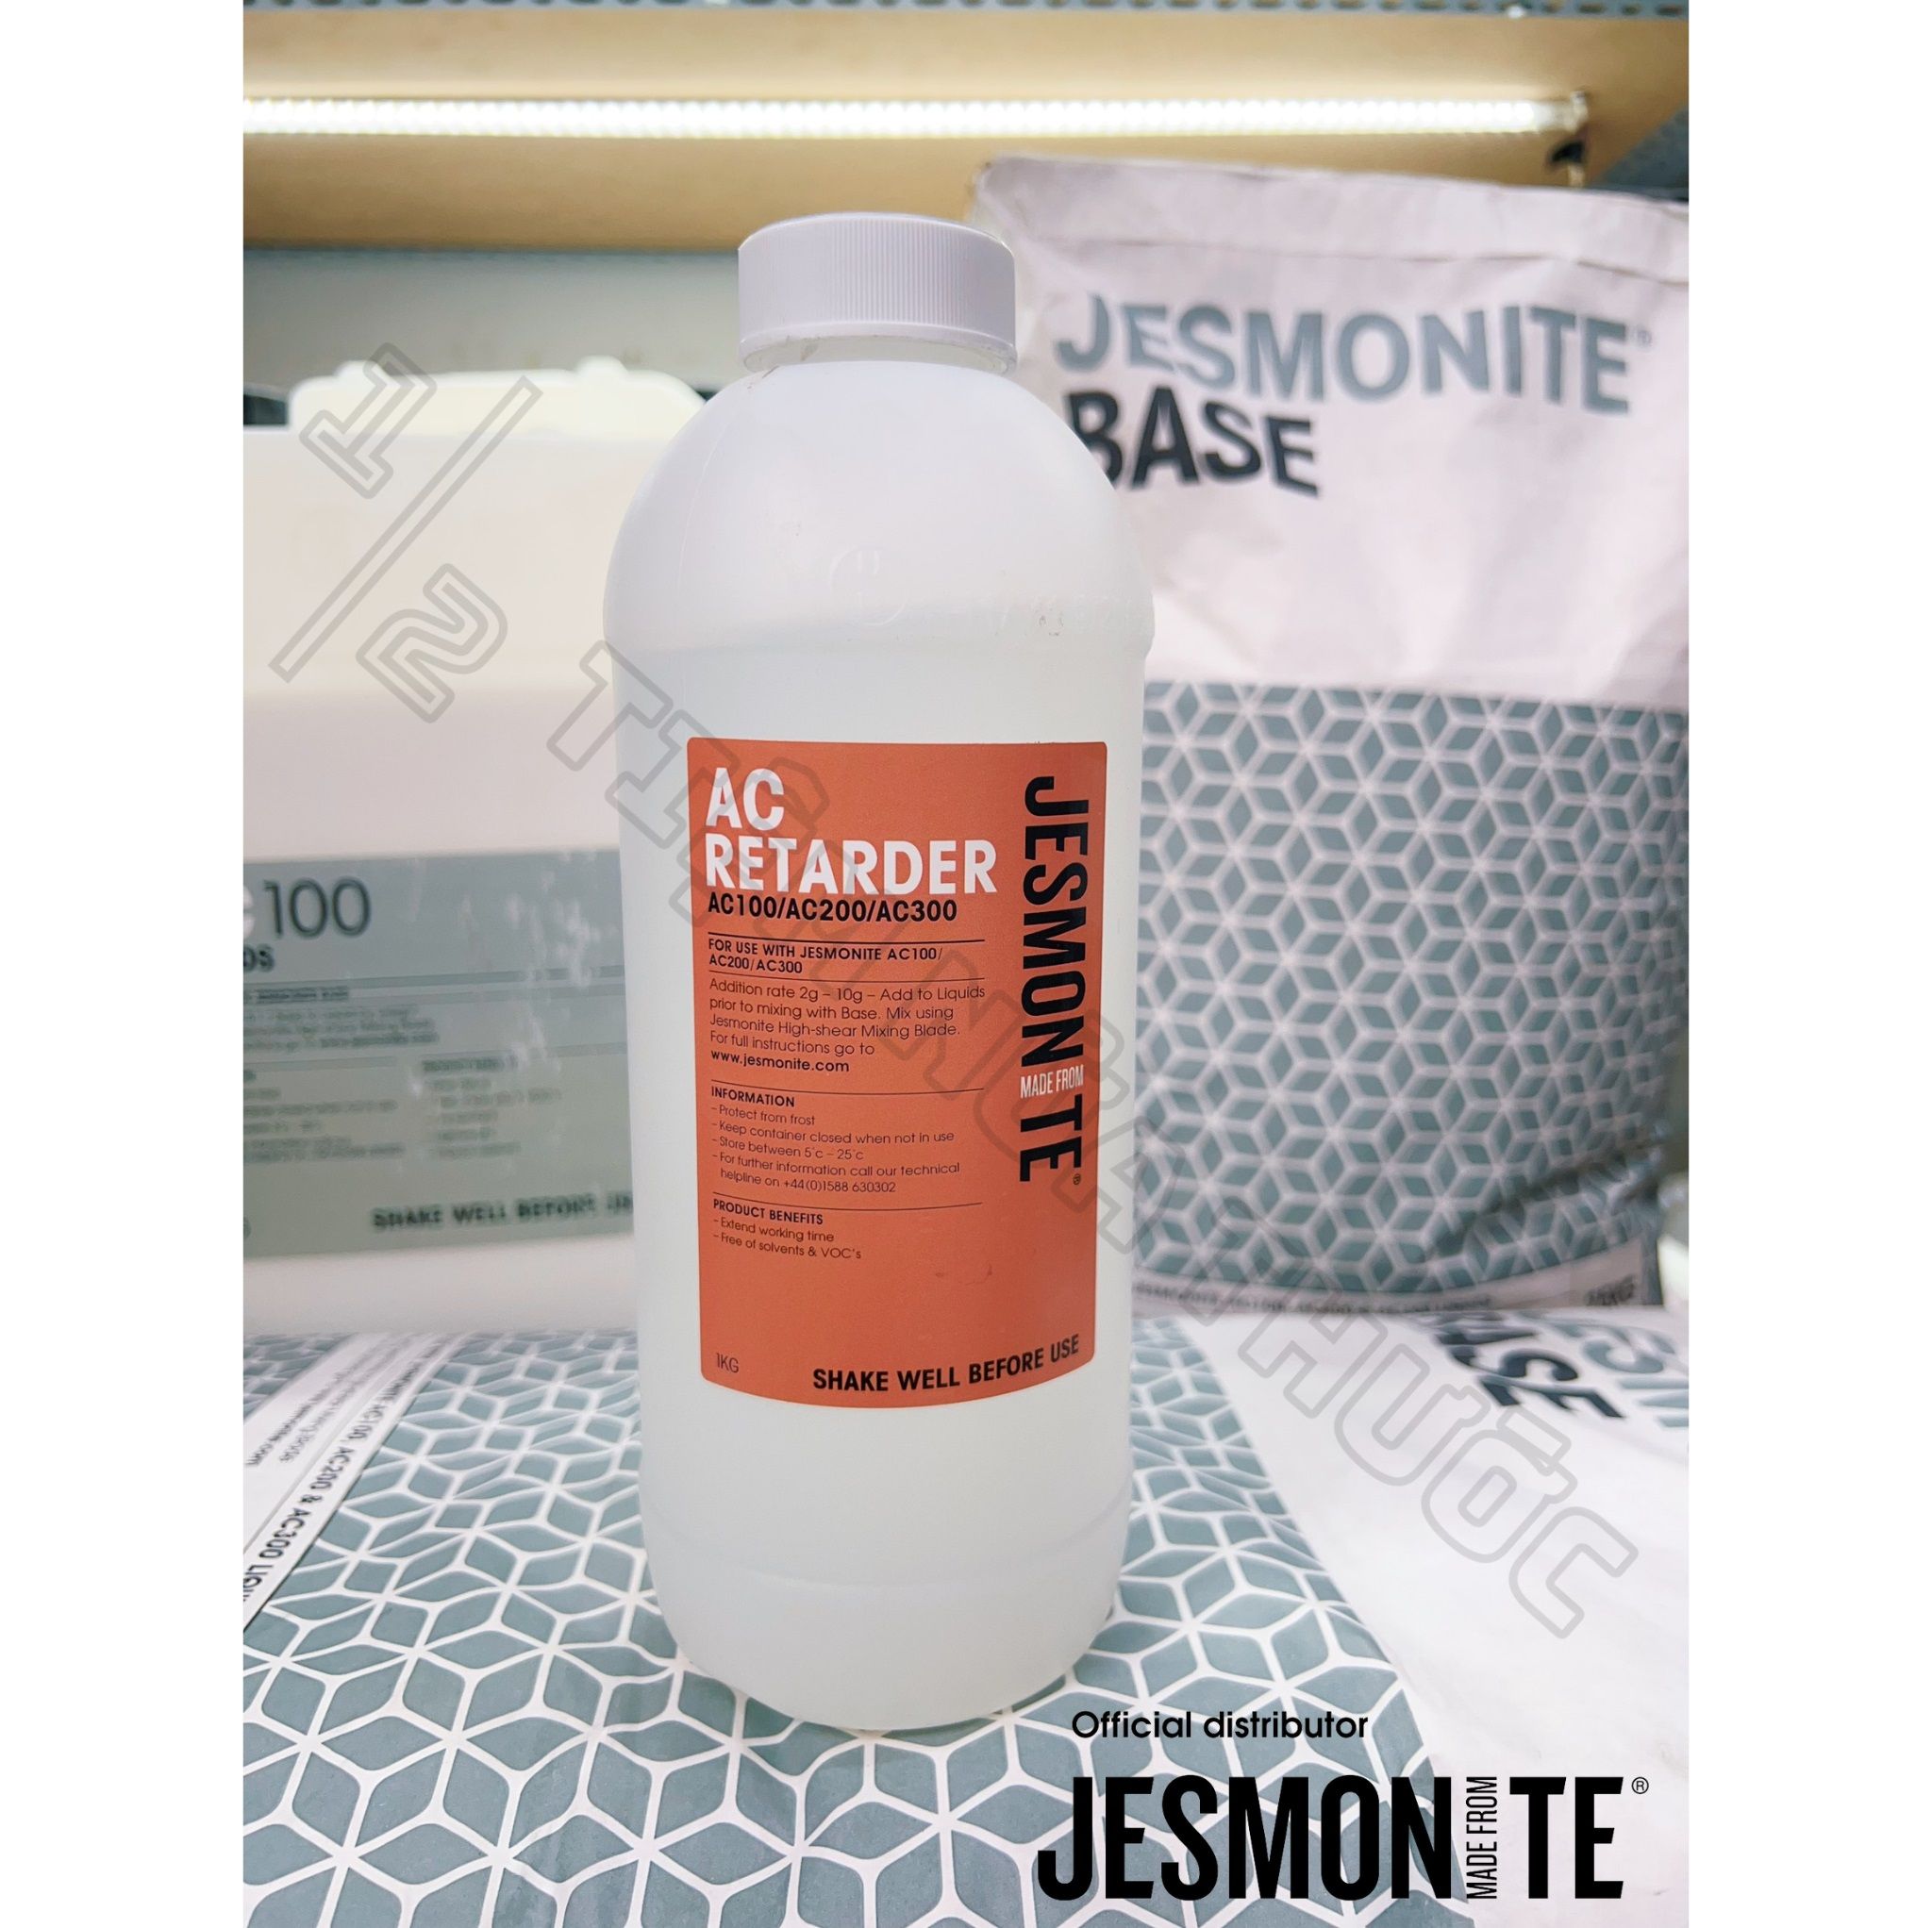 Chất chậm đông - Jesmonite AC Retarder 1kg - Bao bì chính hãng